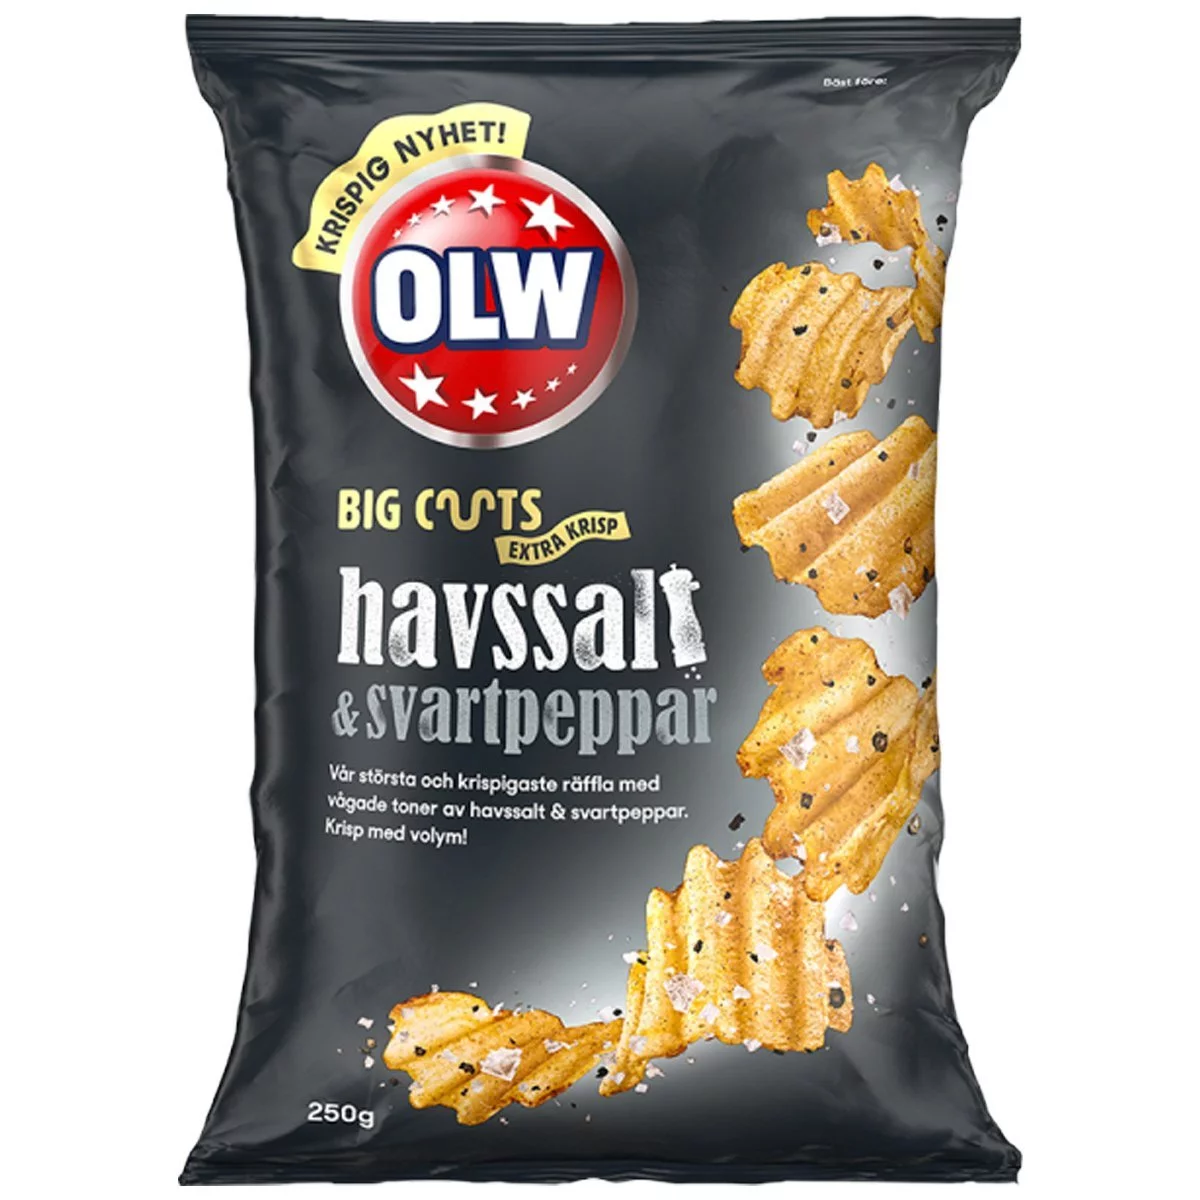 OLW Big Cuts Havssalt & Svartpeppar Chips (160g) 1